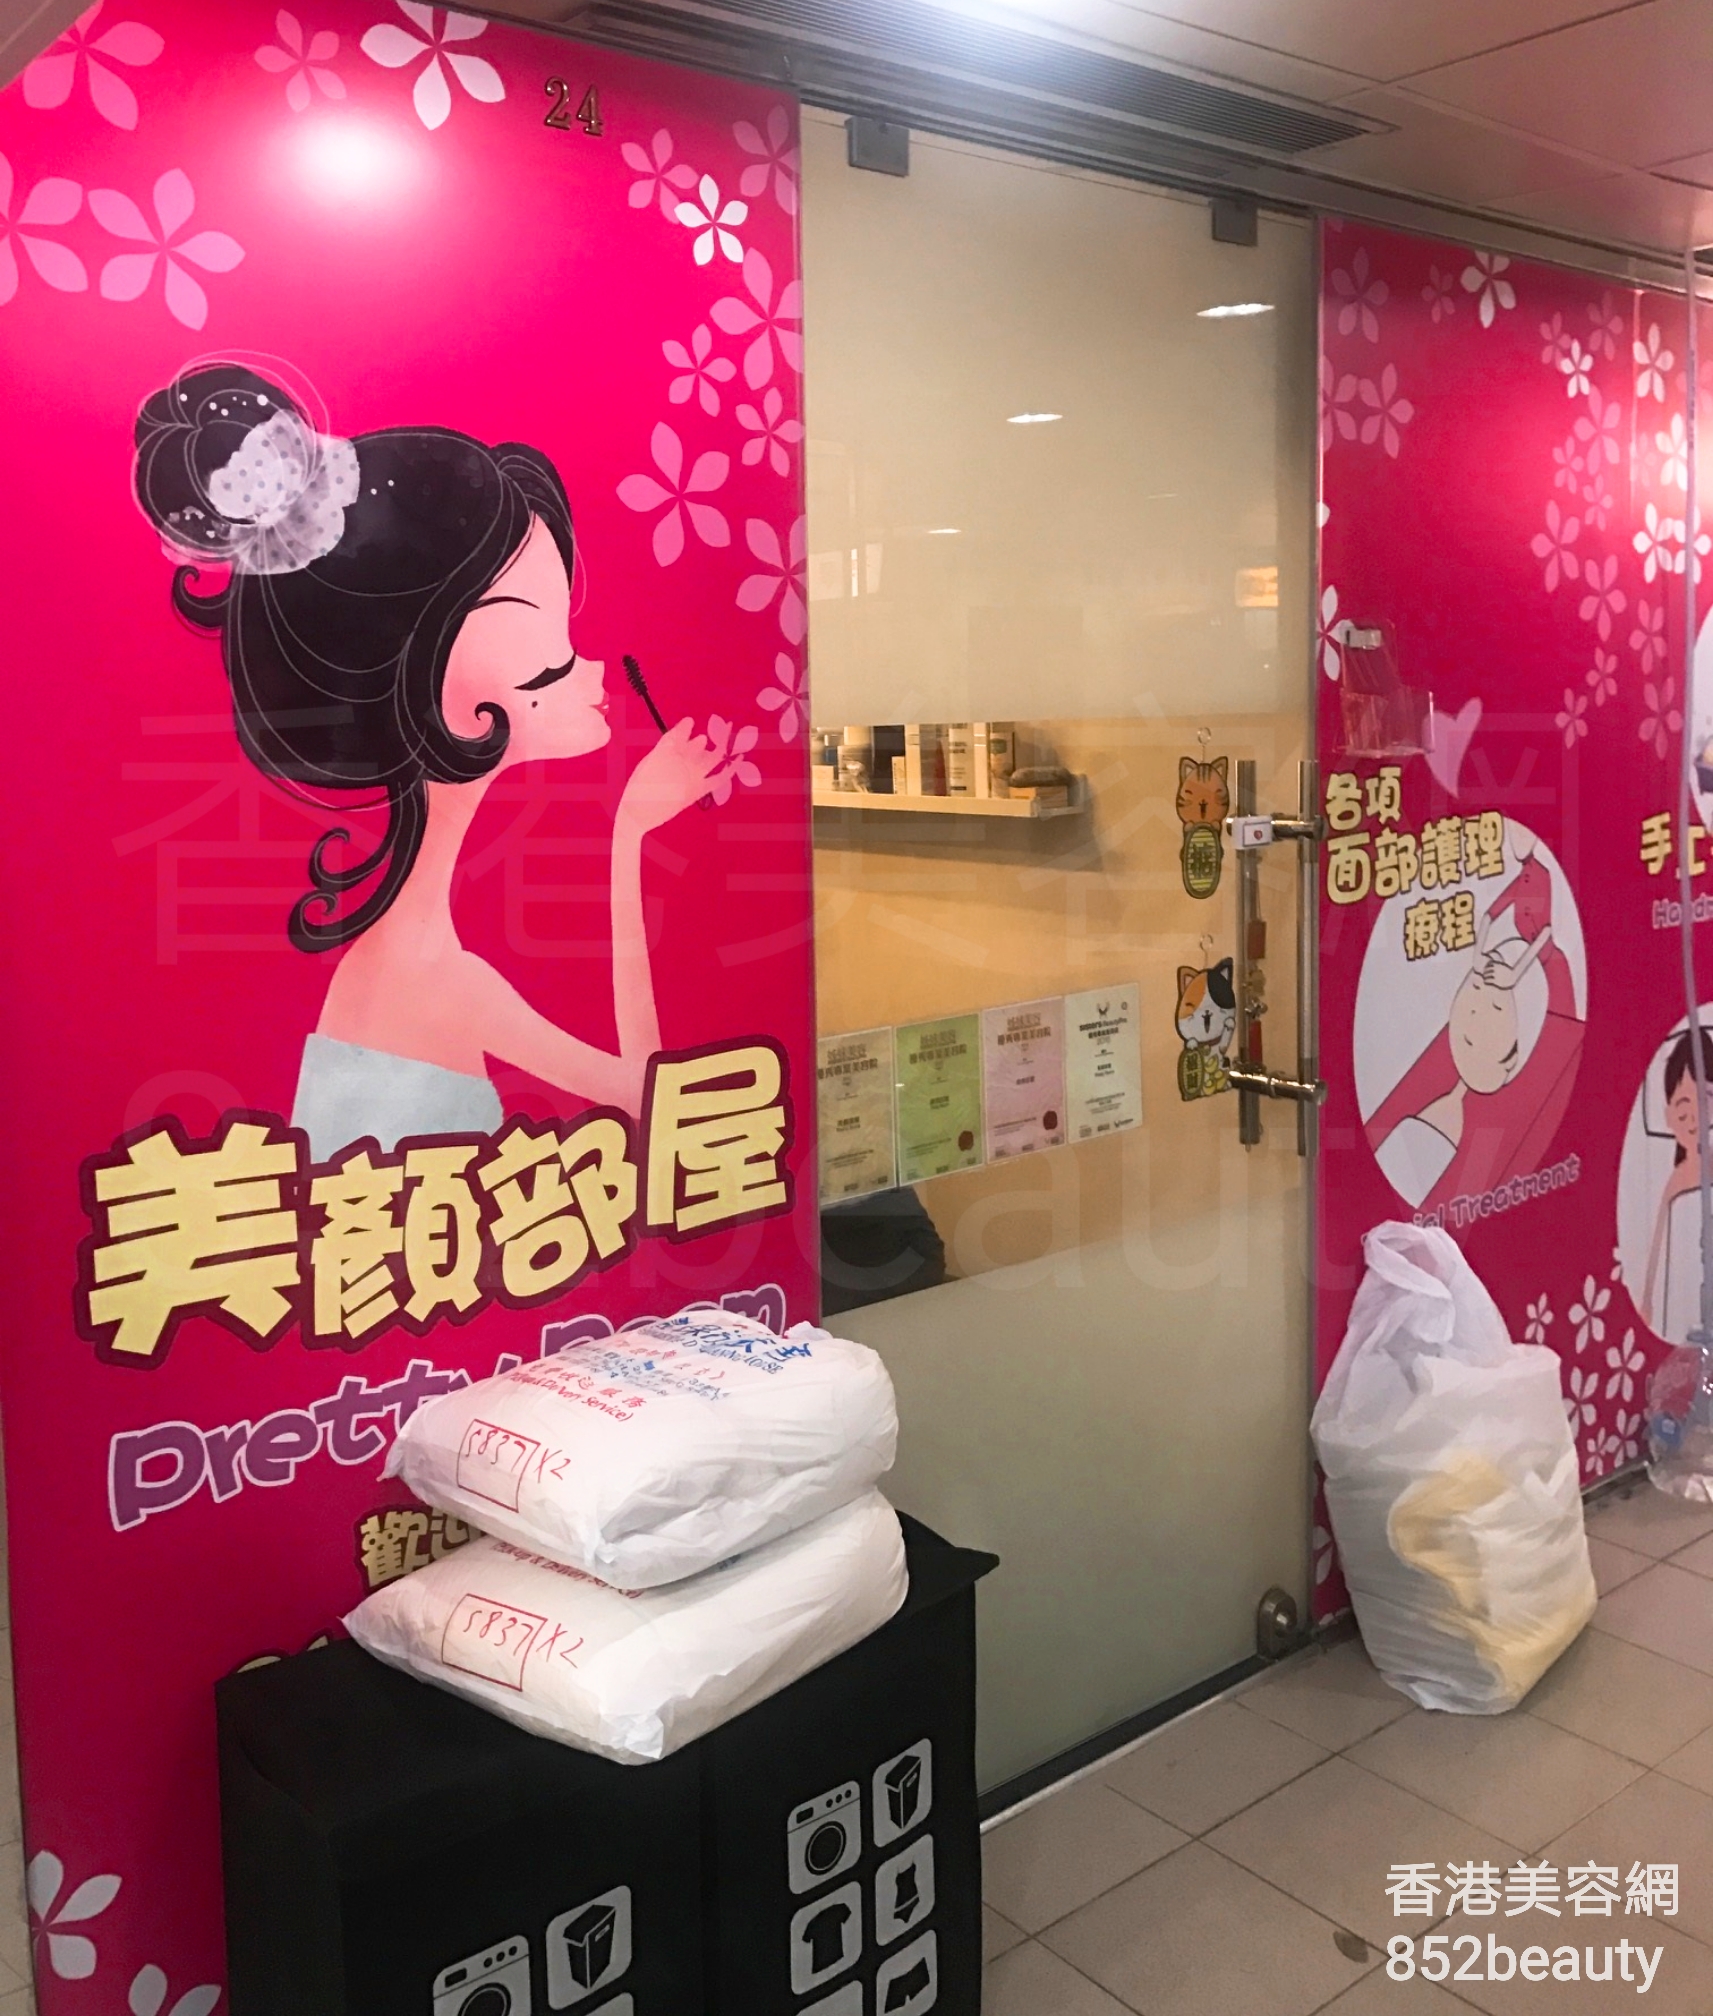 香港美容網 Hong Kong Beauty Salon 美容院 / 美容師: 美顏部屋 Pretty Room